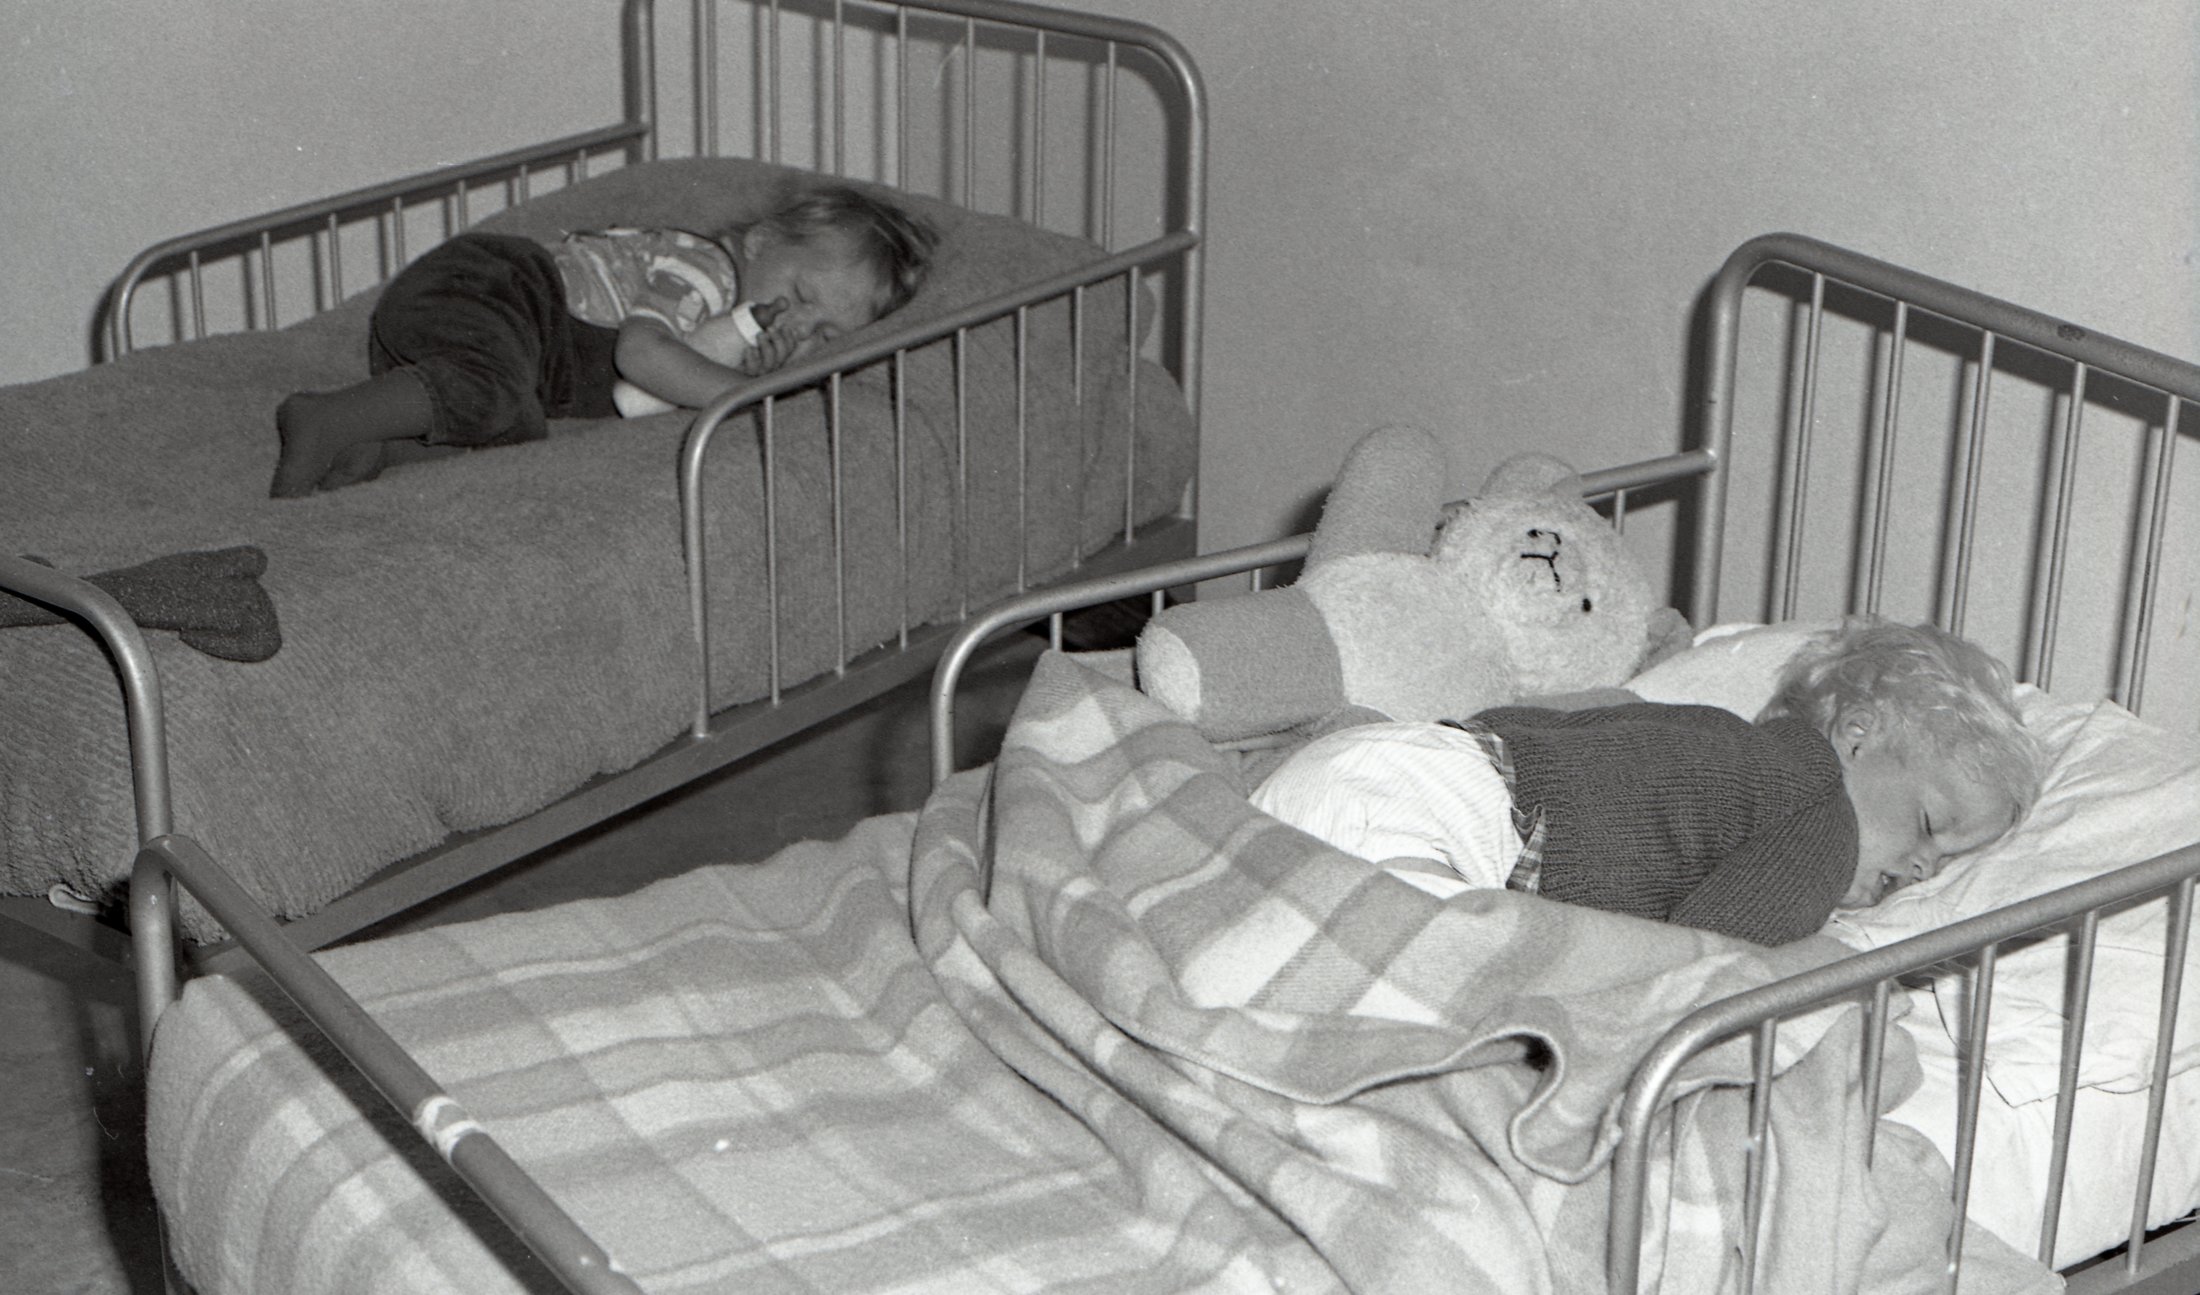 1975 - Children Sleeping